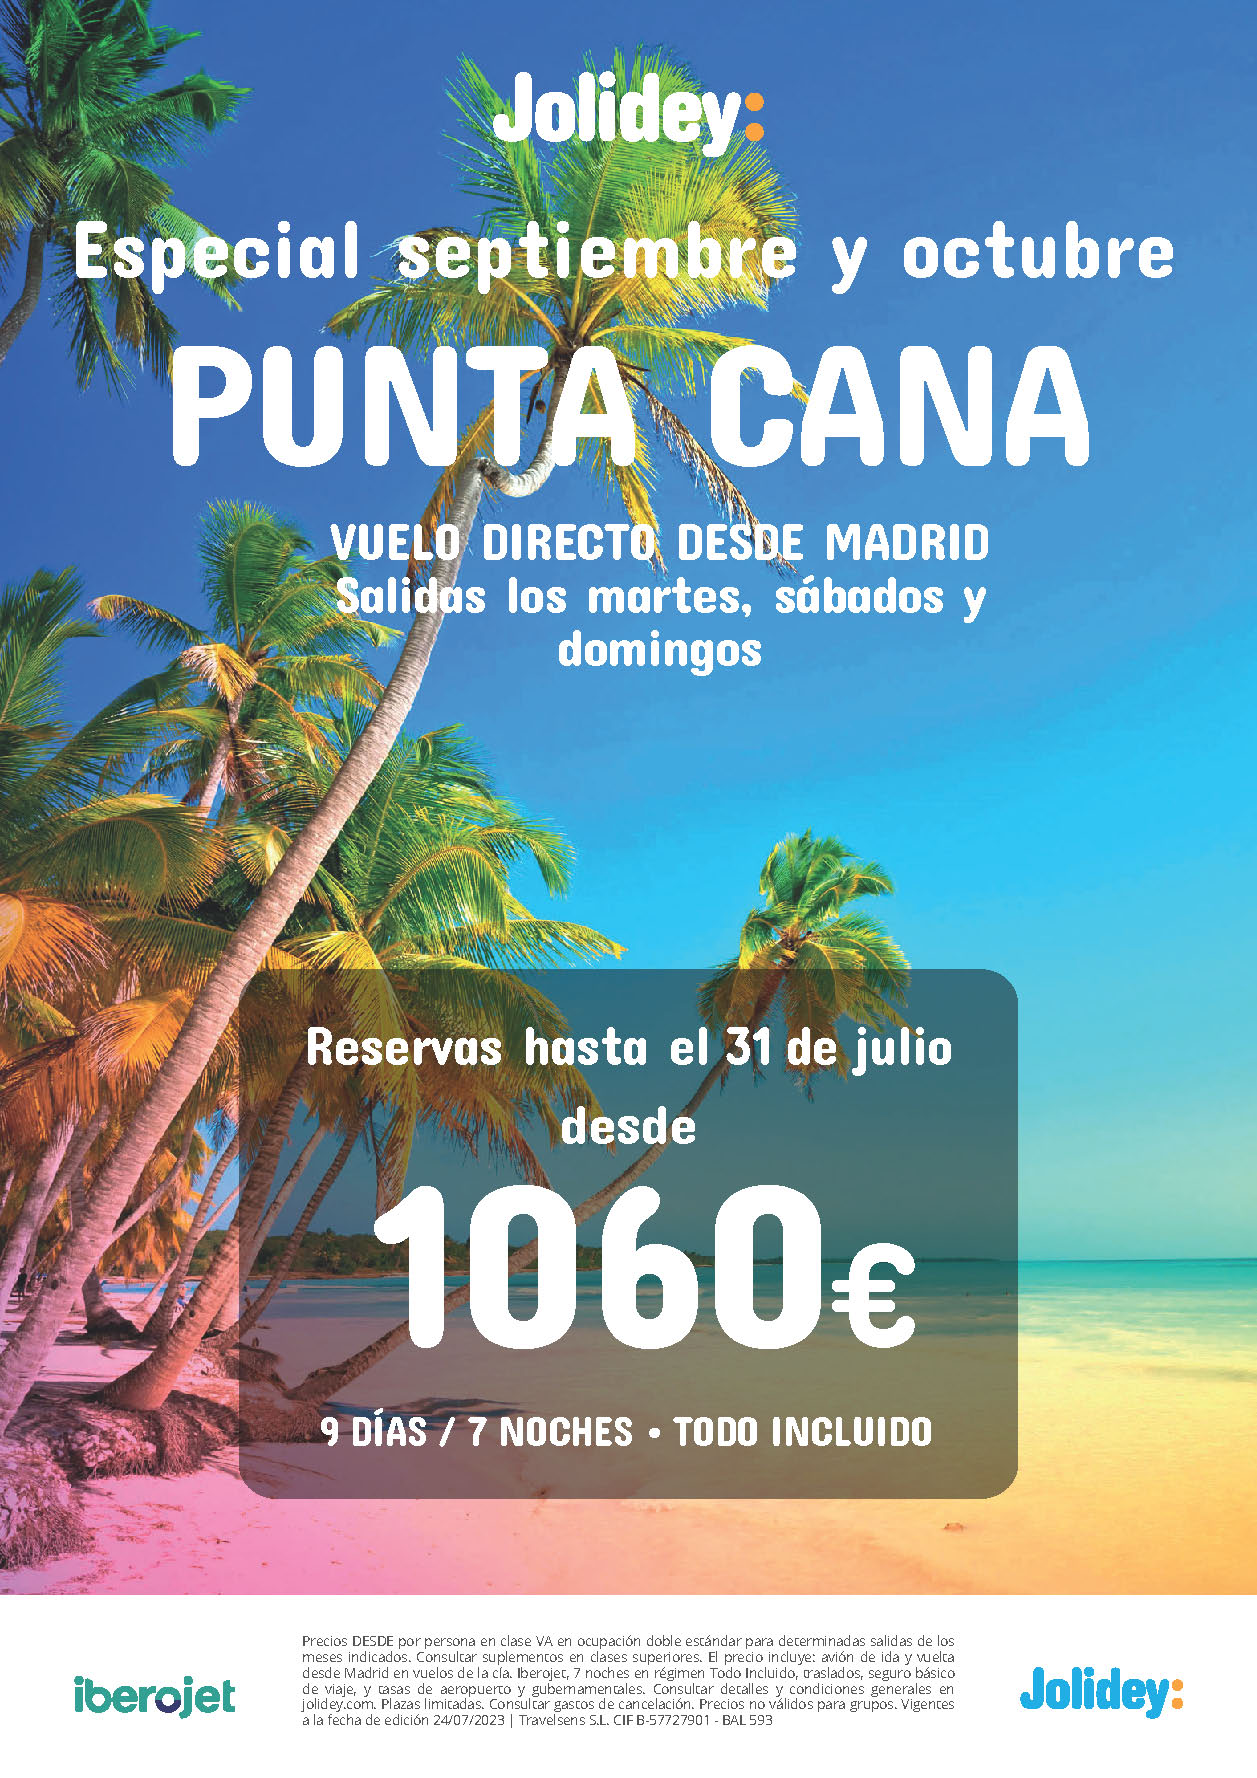 Oferta Jolidey Especial Septiembre Octubre 2023 Estancia en Punta Cana Republica Dominicana 9 dias Todo Incluido salidas en vuelo directo desde Madrid